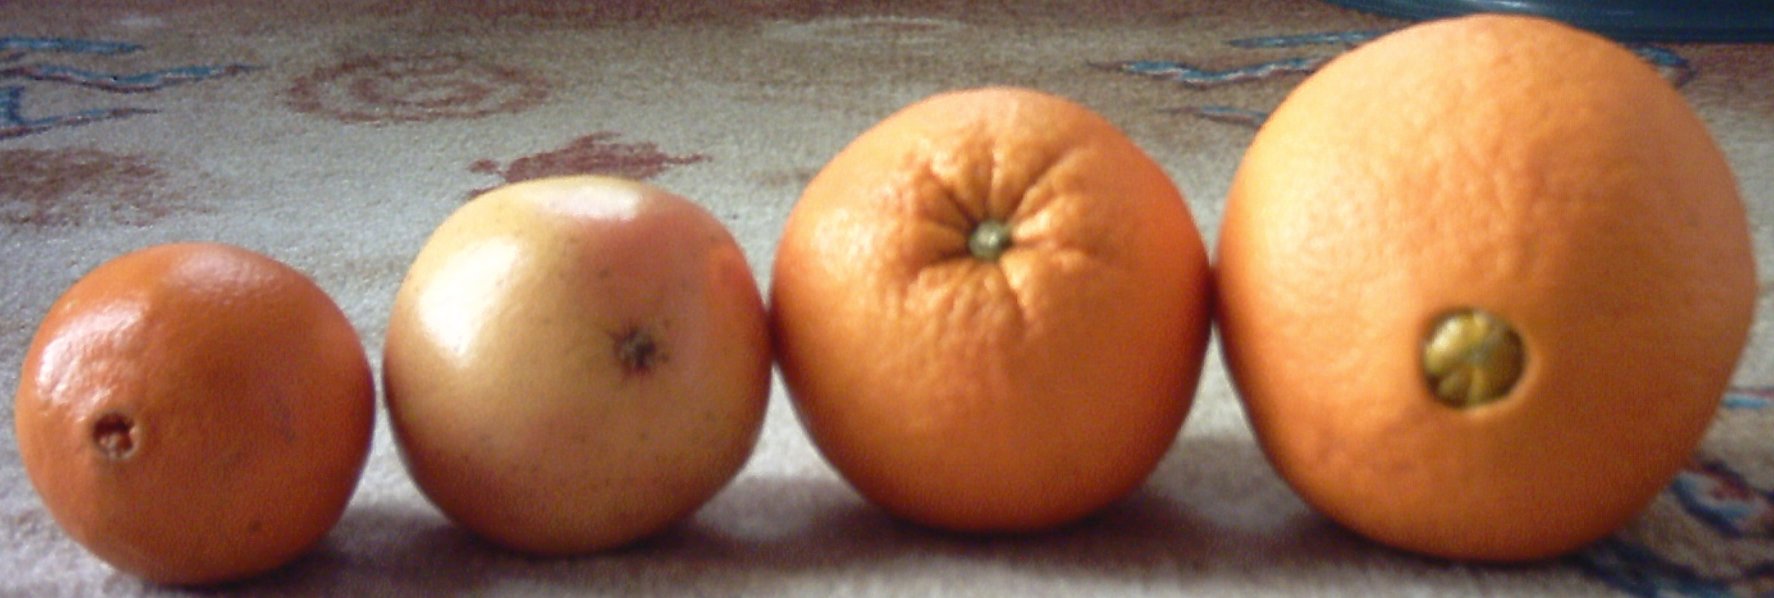 Oranges06